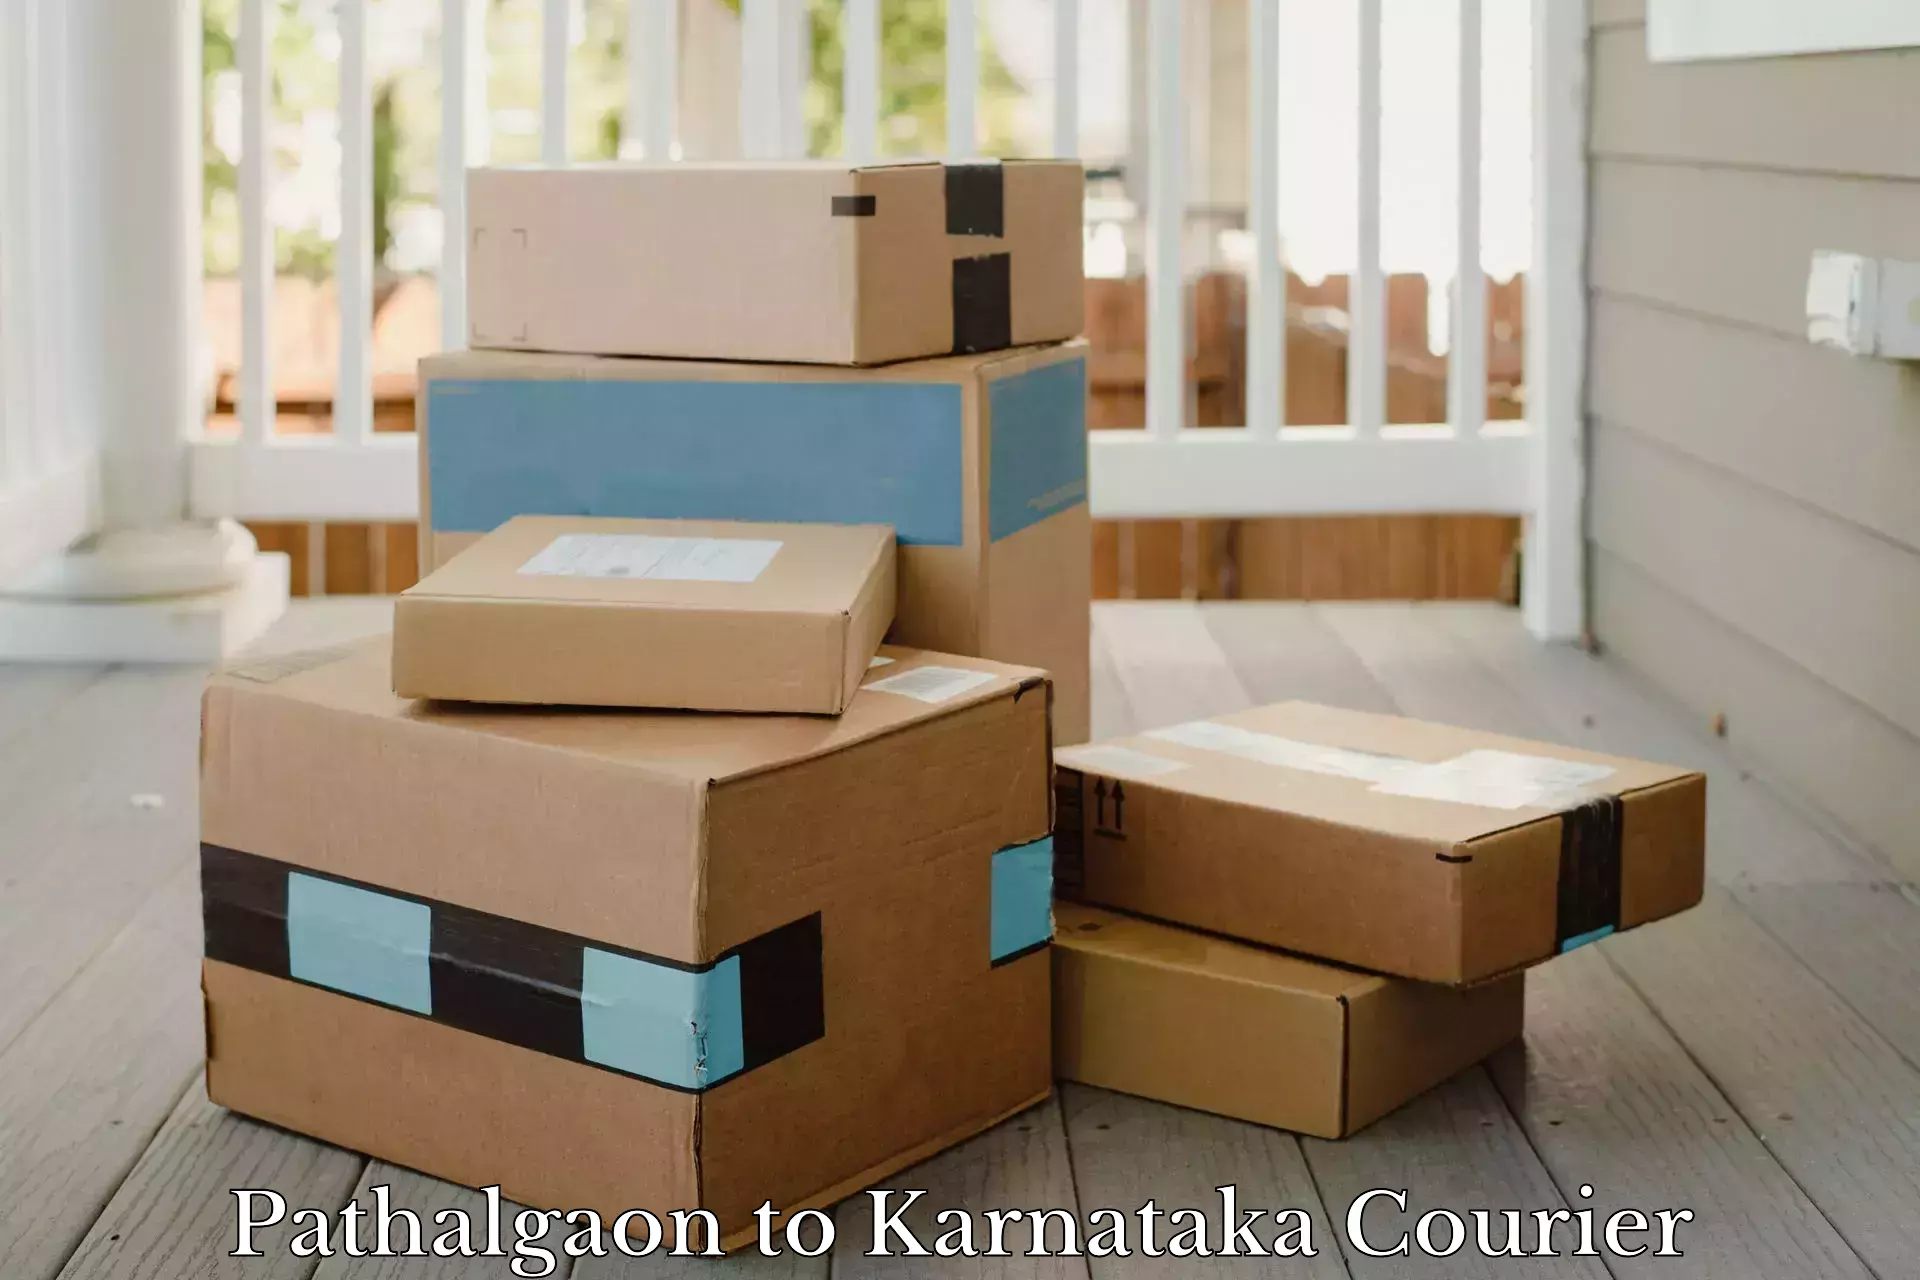 Package delivery network Pathalgaon to Channarayapatna